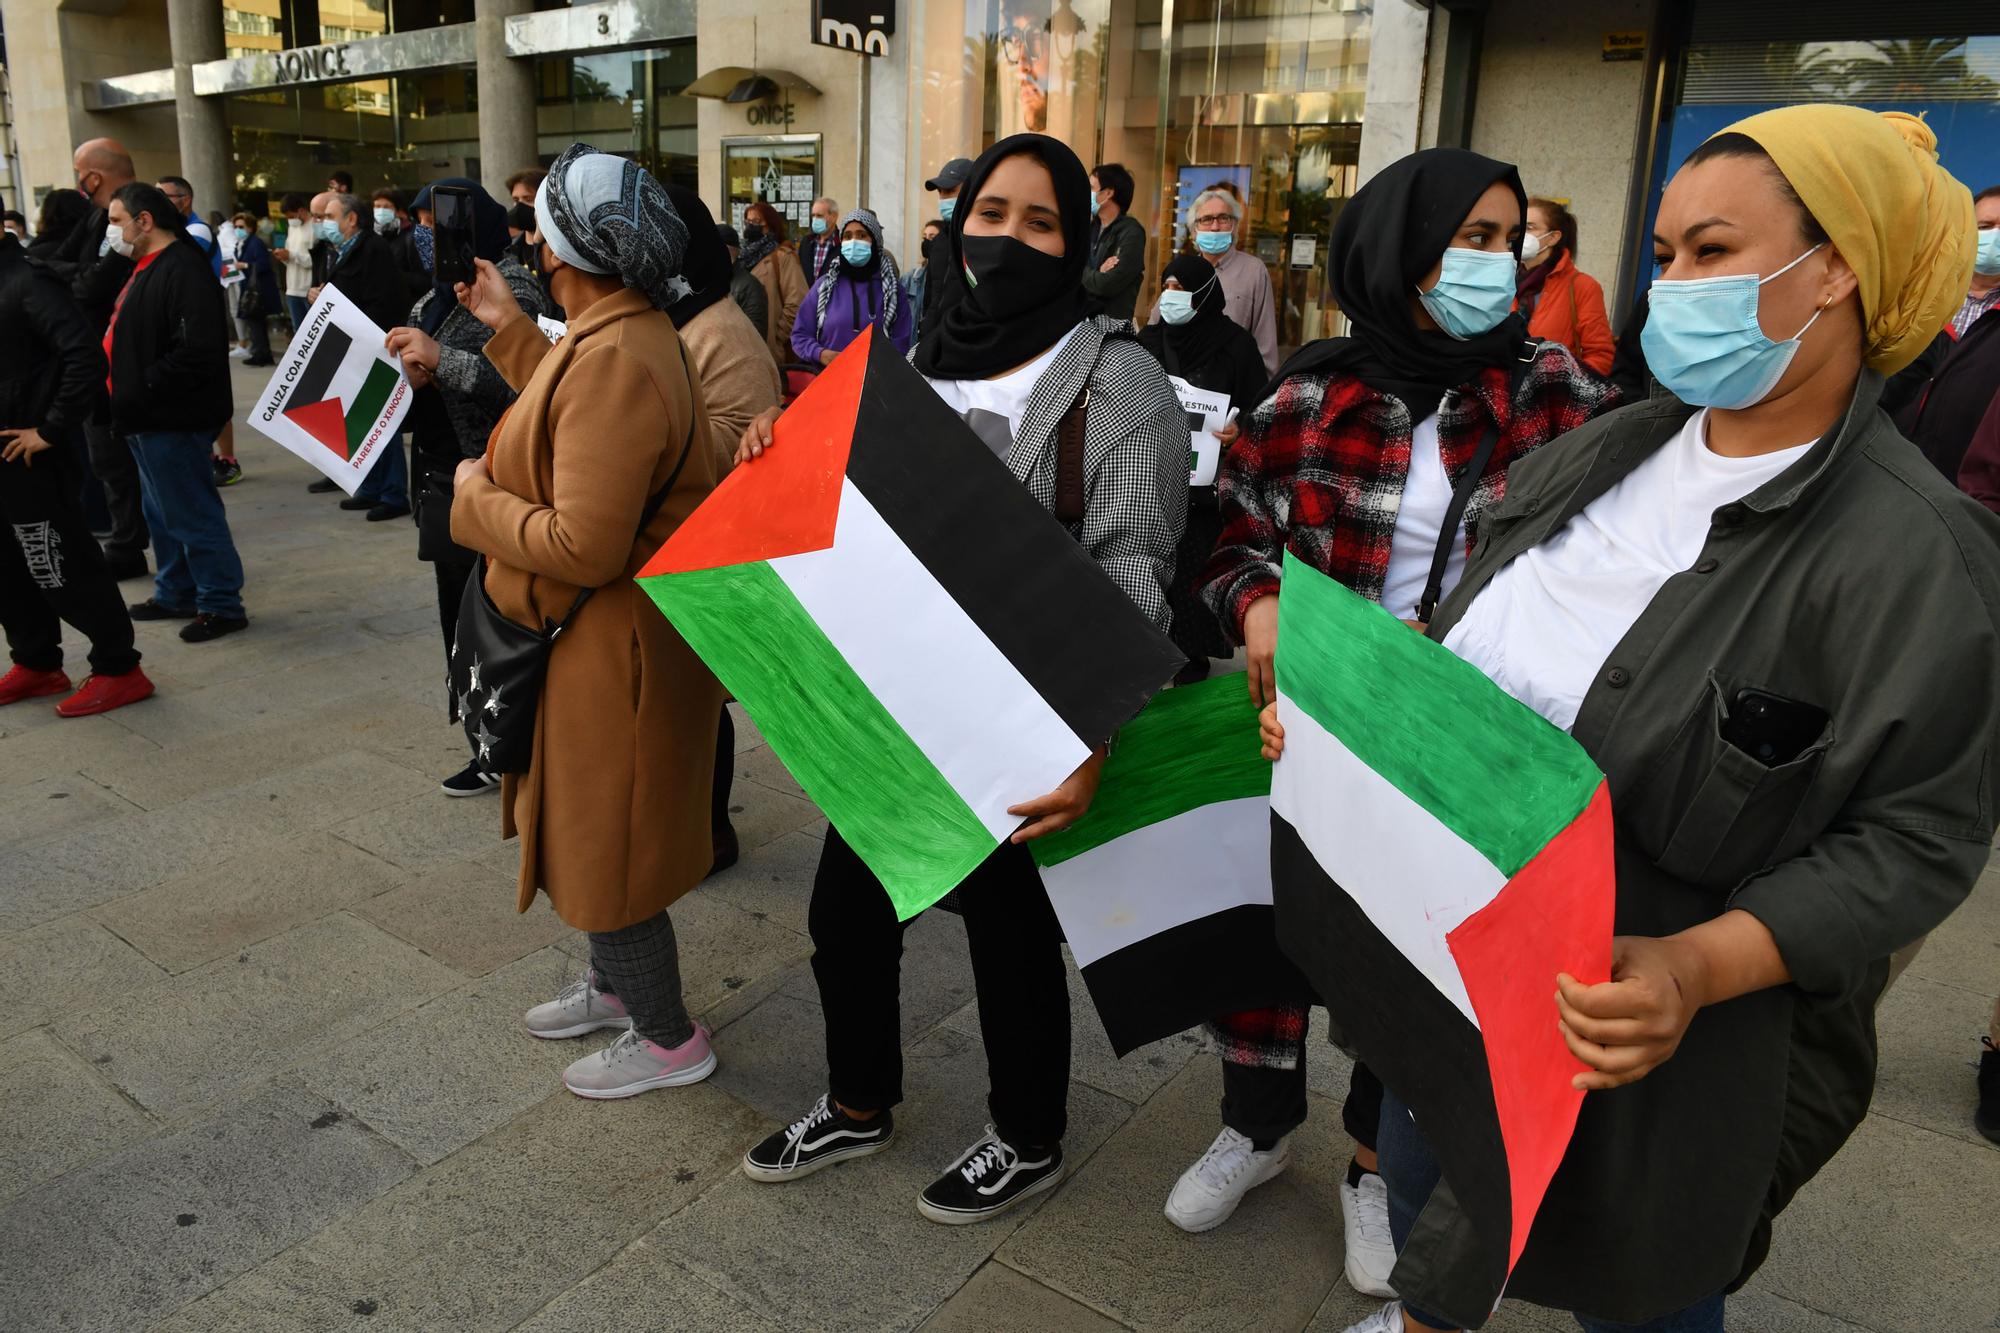 Protesta en A Coruña por la escalada bélica en Gaza